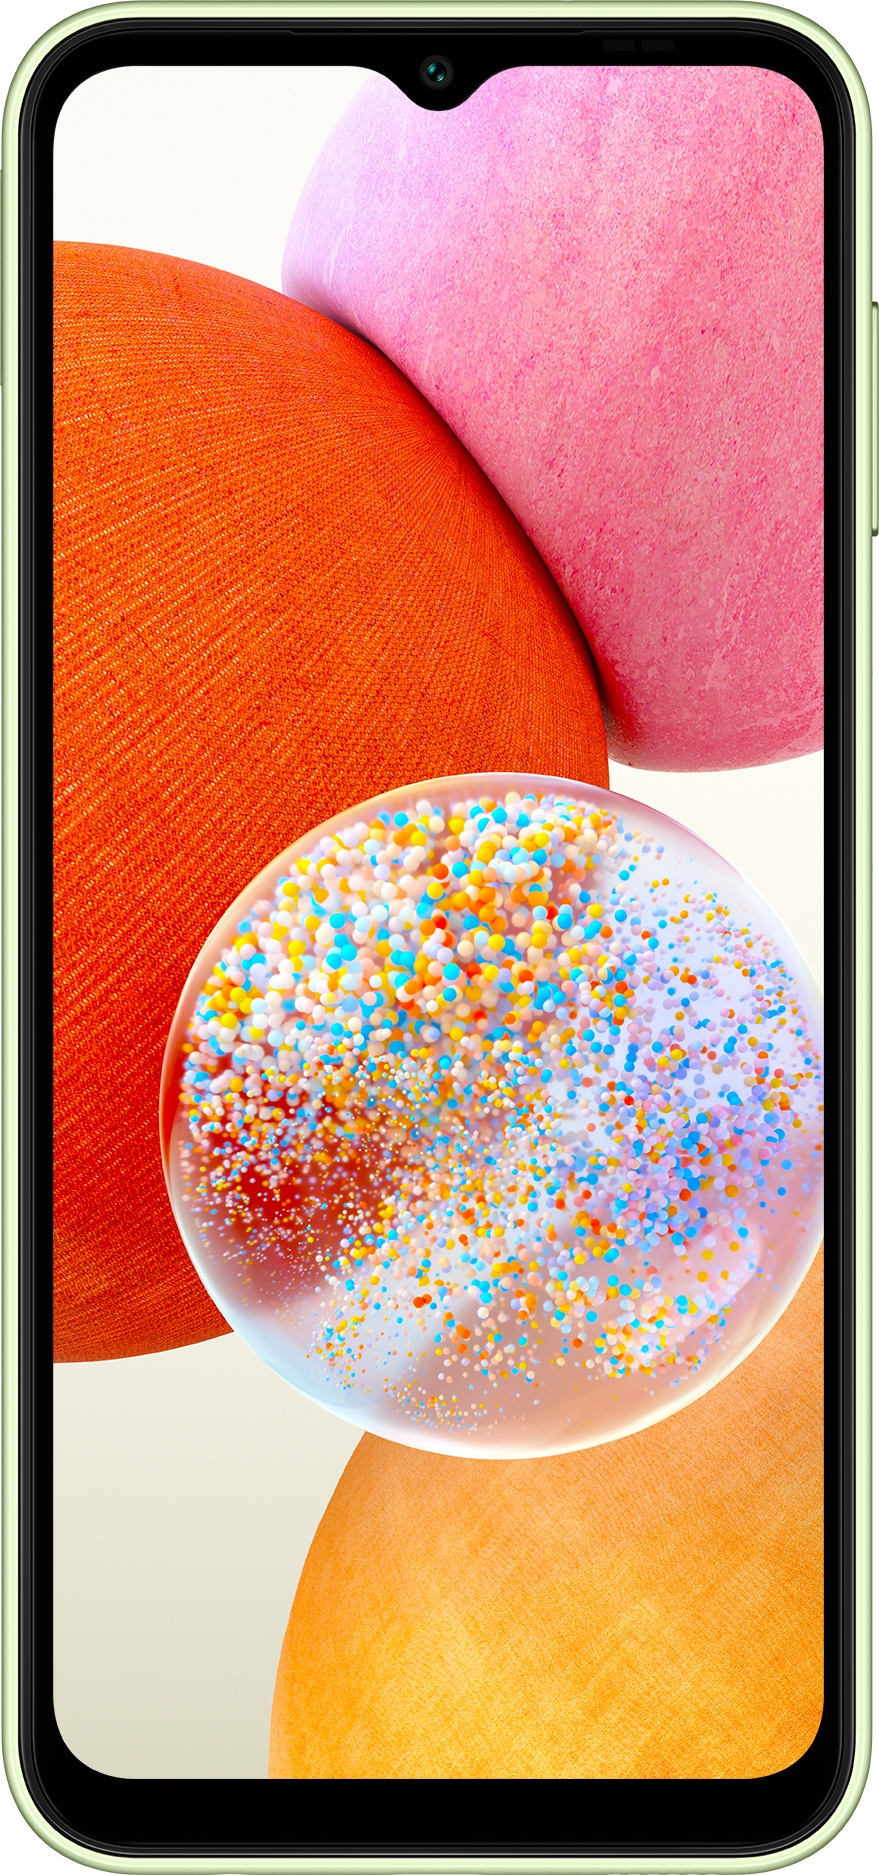 Смартфон Samsung SM-A145 Galaxy A14 64Gb 4Gb светло-зеленый 6.6